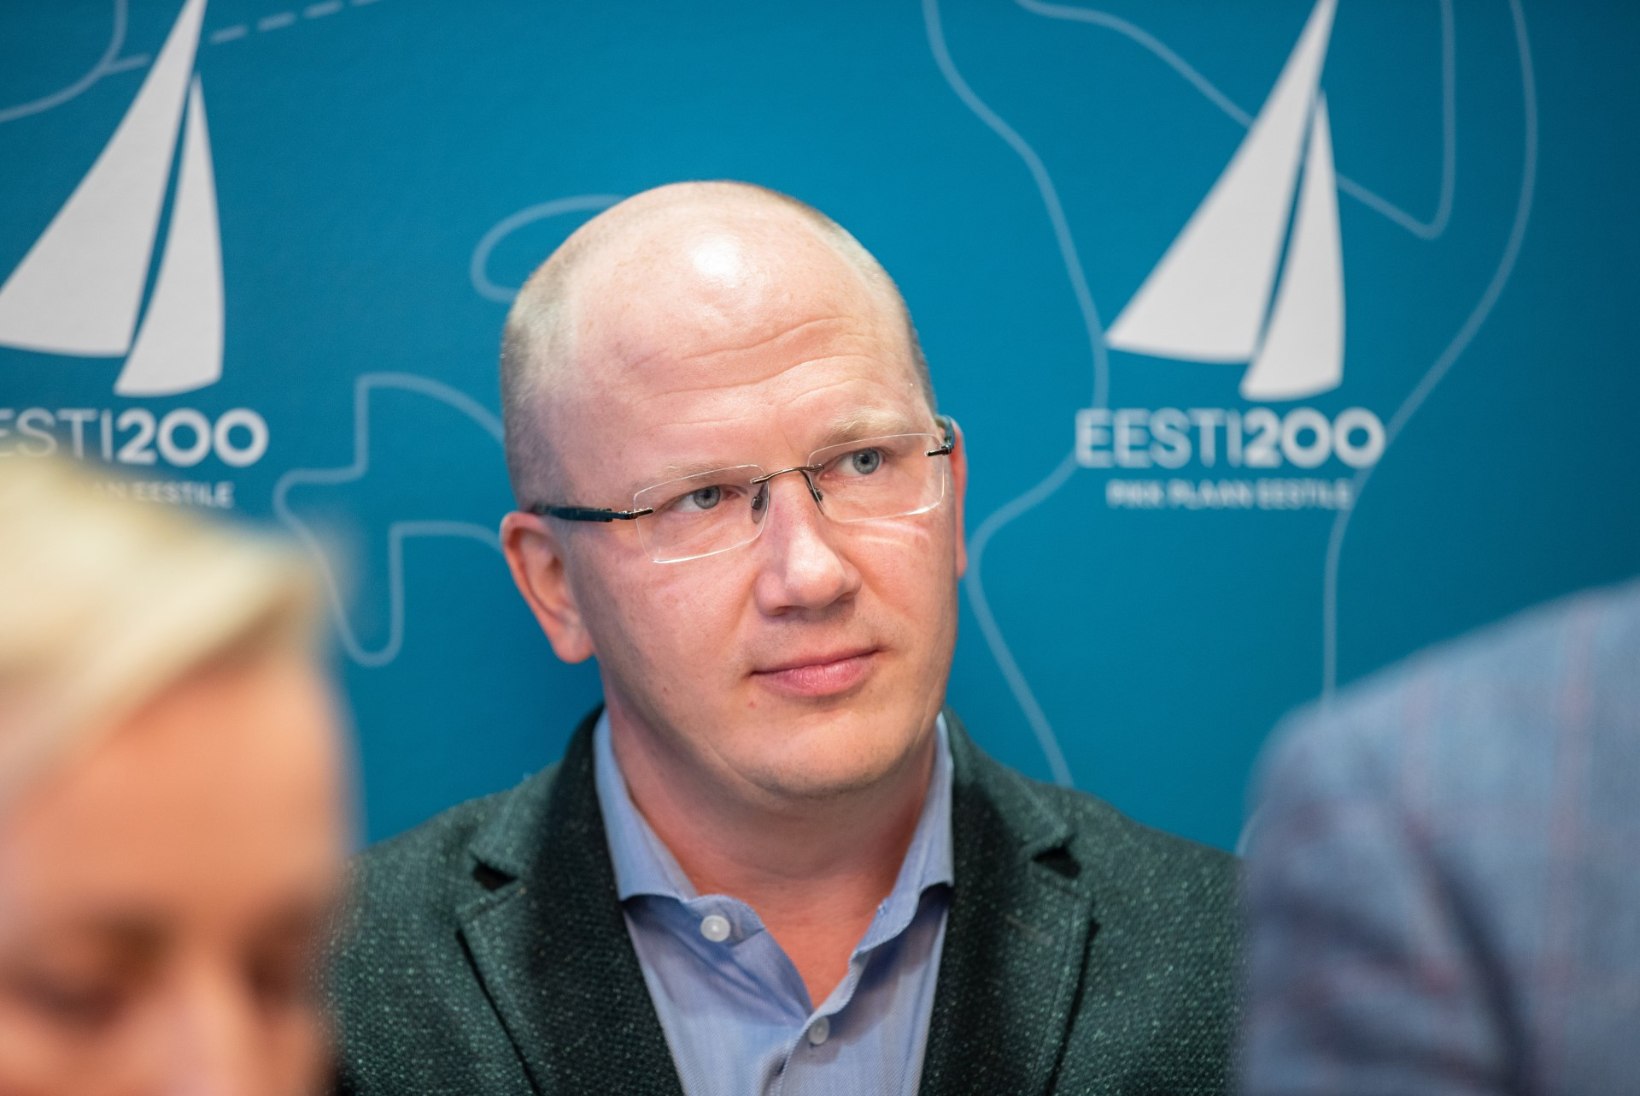 Eesti 200 moodustas oma ideede levitamiseks varivalitsuse: peaministriks Priit Alamäe